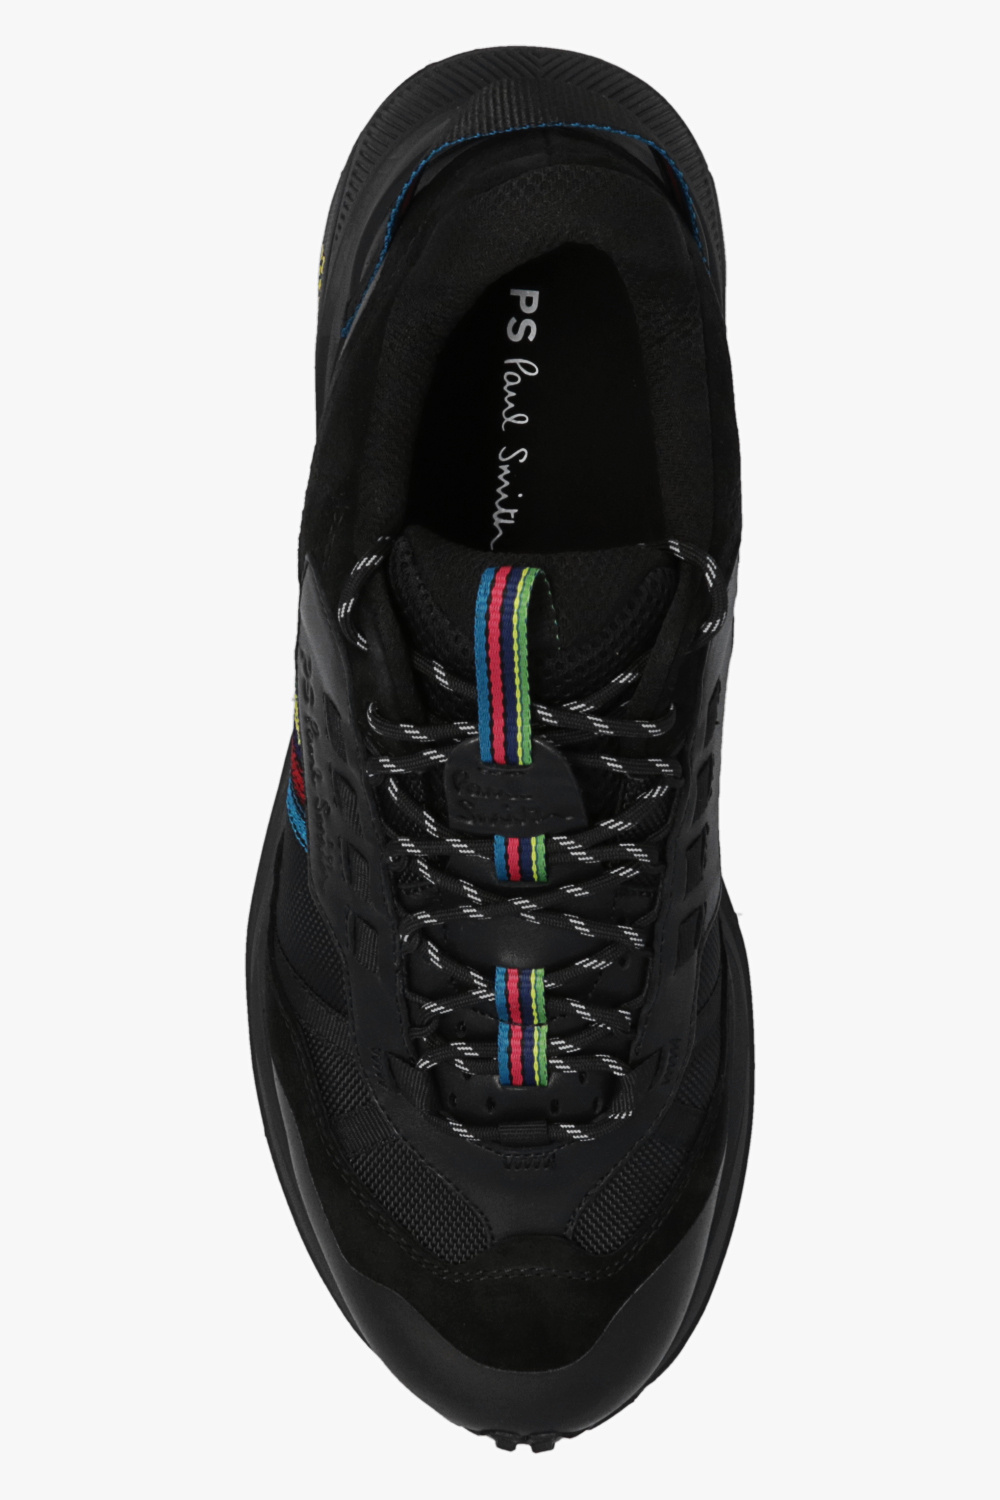 zapatillas de running HOKA constitución media minimalistas talla 47.5 grises ‘Primus’ sneakers